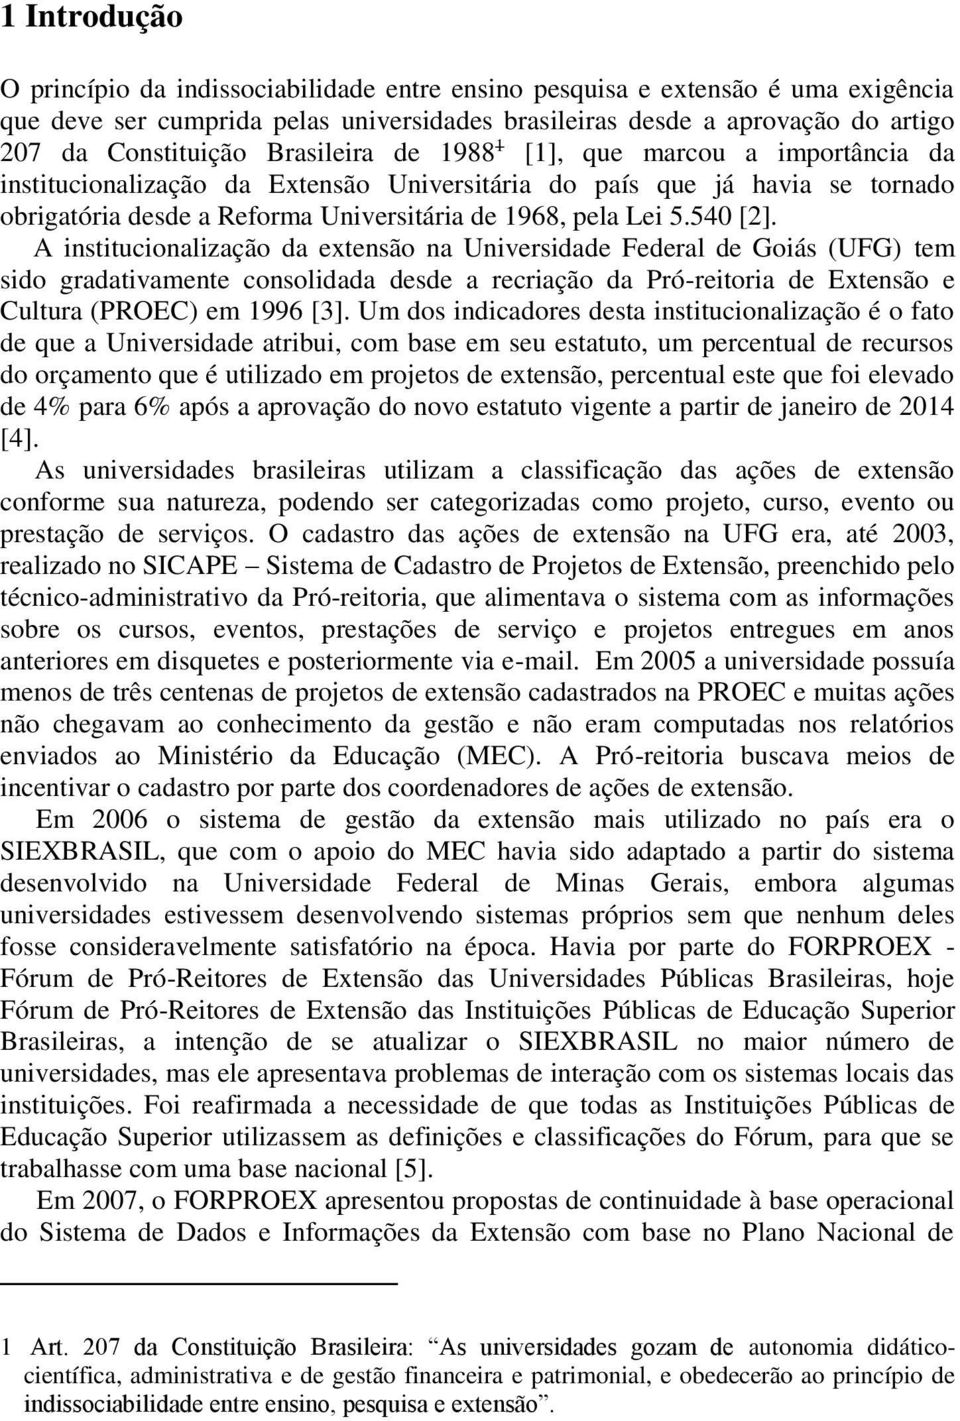 540 [2]. A institucionalização da extensão na Universidade Federal de Goiás (UFG) tem sido gradativamente consolidada desde a recriação da Pró-reitoria de Extensão e Cultura (PROEC) em 1996 [3].